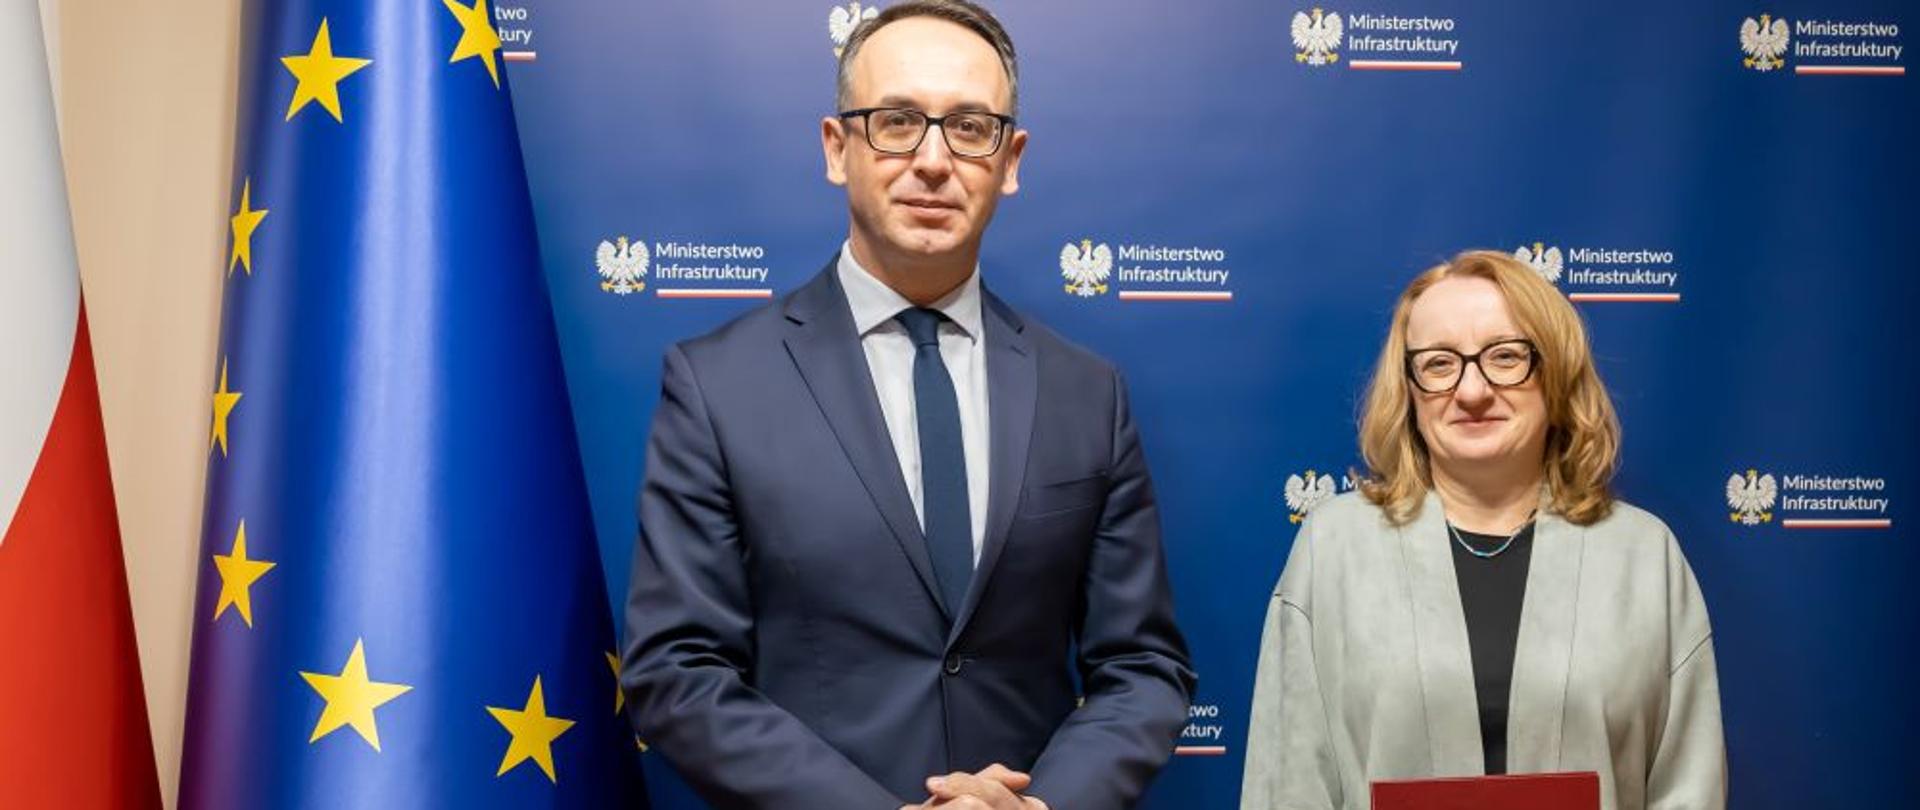 Minister Infrastruktury Dariusz Klimczak oraz nowa prezes Wód Polskich Joanna Kopczyńska stoją na granatowym tle z logiem Ministerstwa Infrastruktury. Na lewo flagi Unii Europejskiej i Polski. 